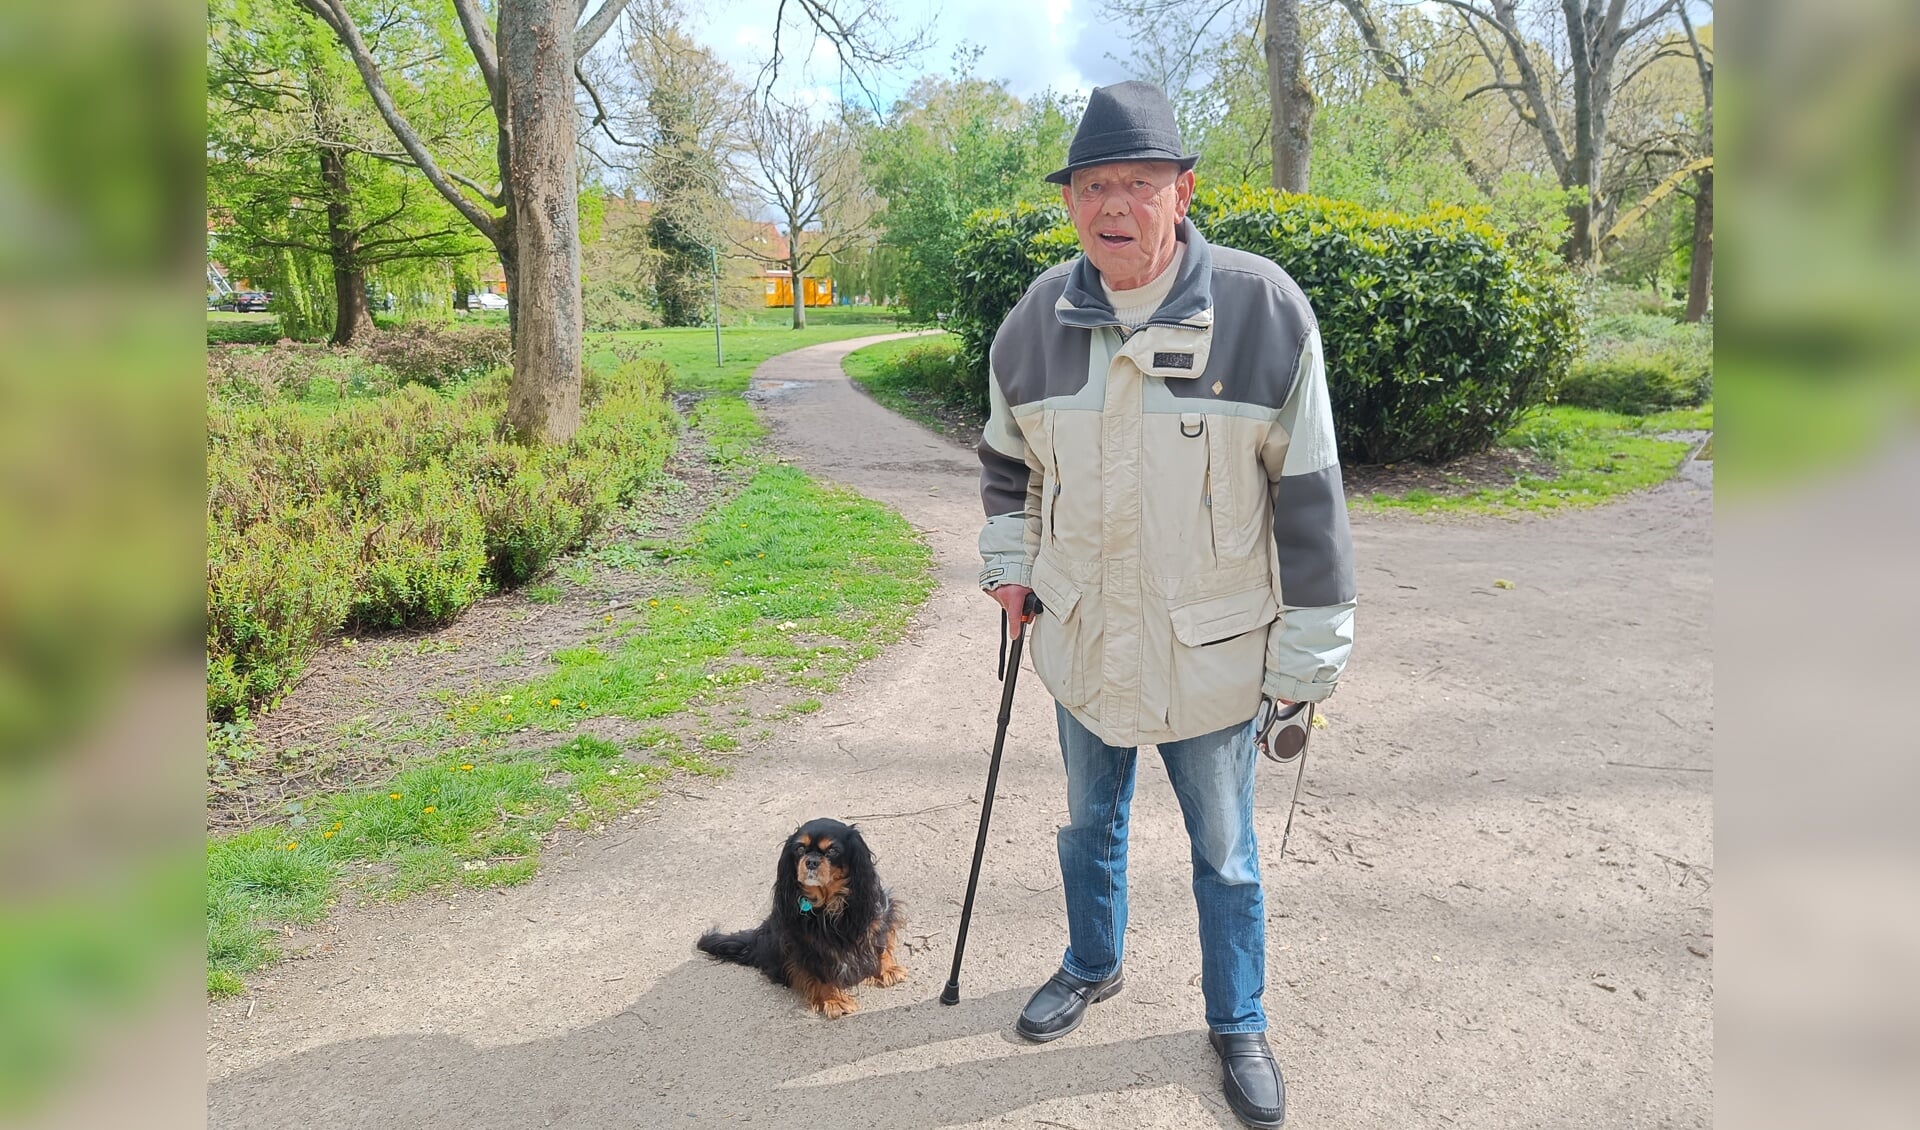 Wim met hondje Tessa in het Wilhelminapark in Delft.